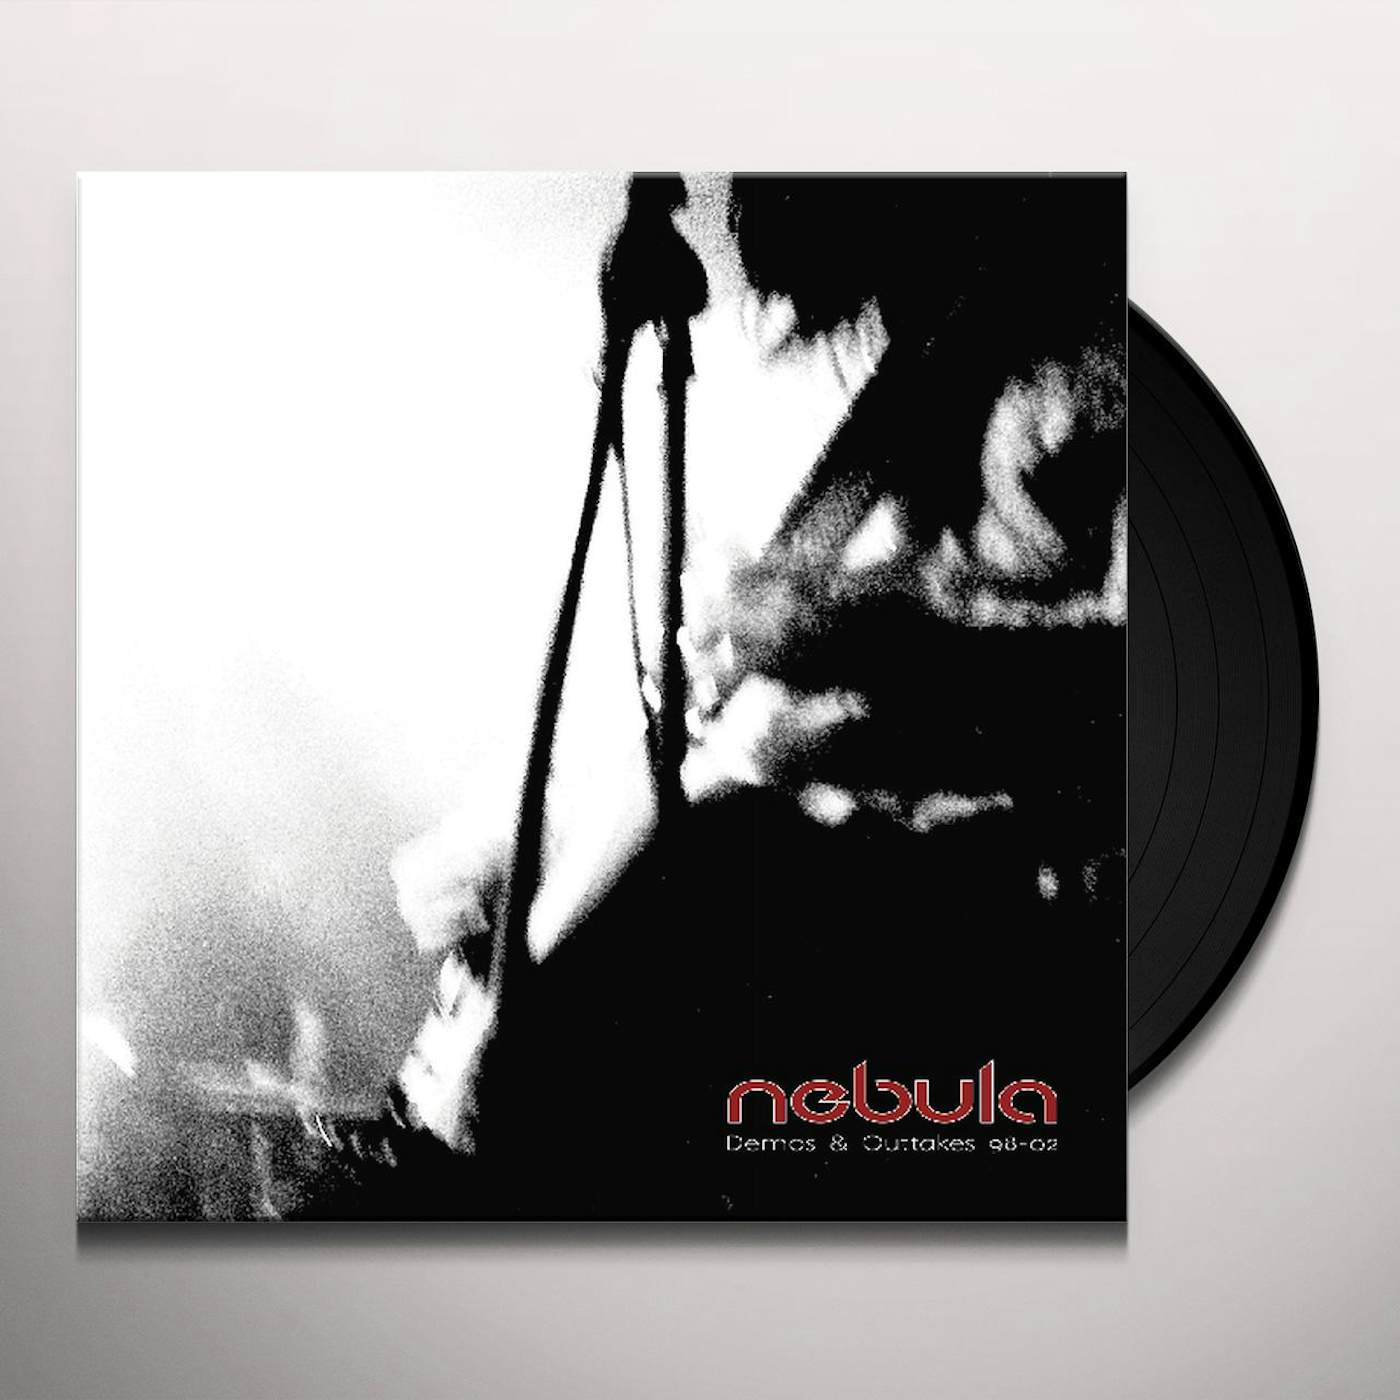 Nebula DEMOS & OUTTAKES 98 02 Vinyl Record